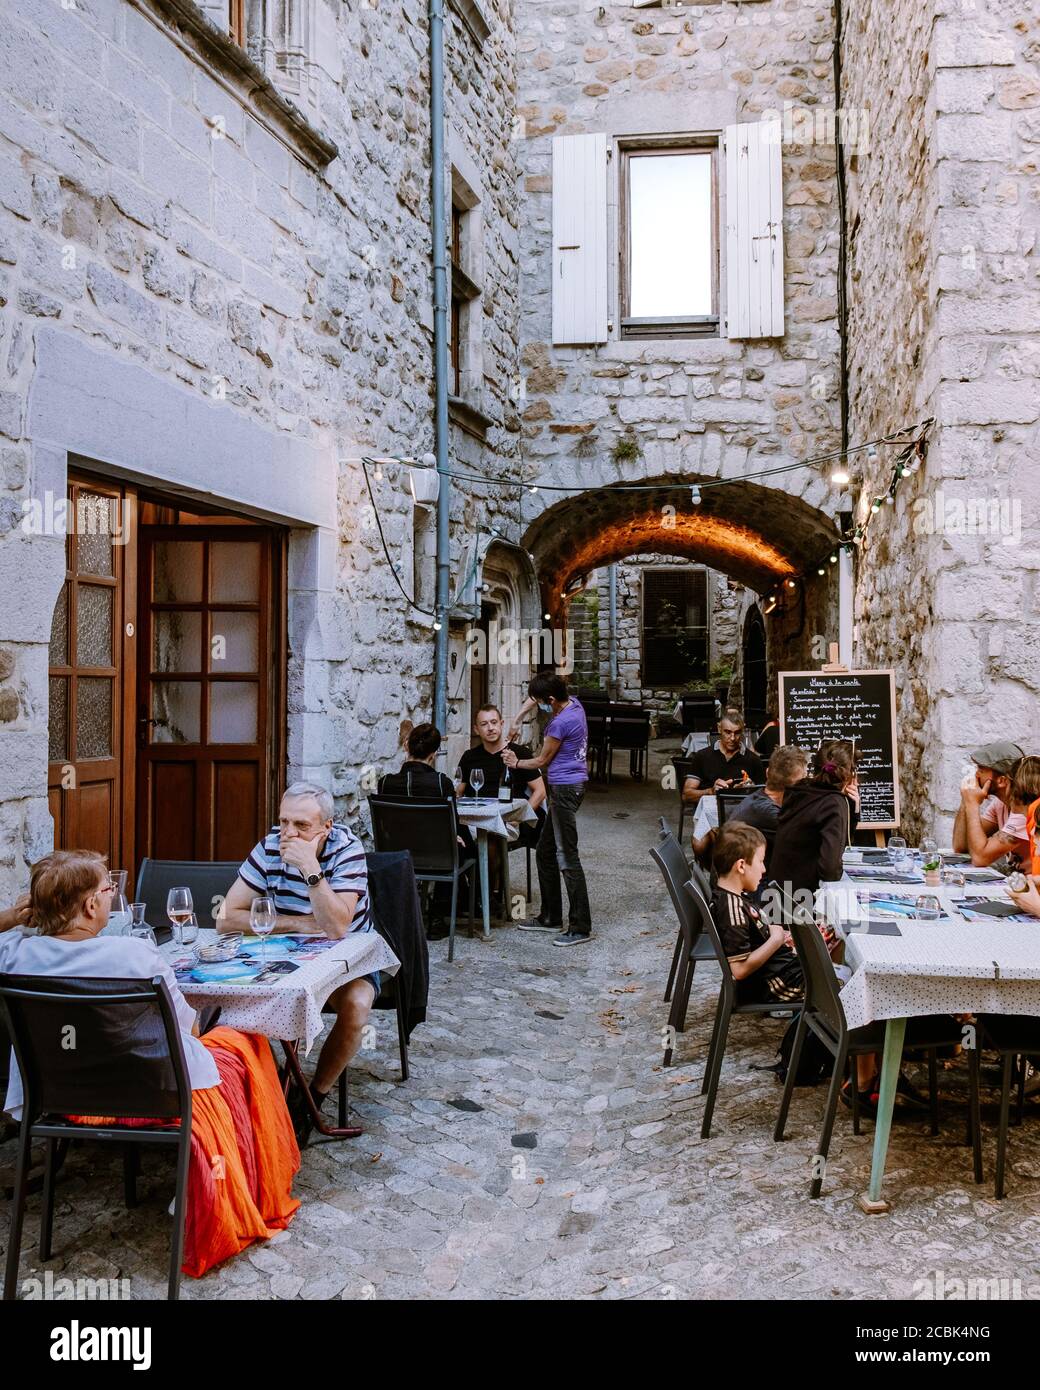 Ruoms Ardeche Francia 2020 giugno, la gente in ristorante al villaggio medievale di Ruoms con le sue vecchie case in mattoni e piccoli vicoli sul fiume Ardeche Foto Stock